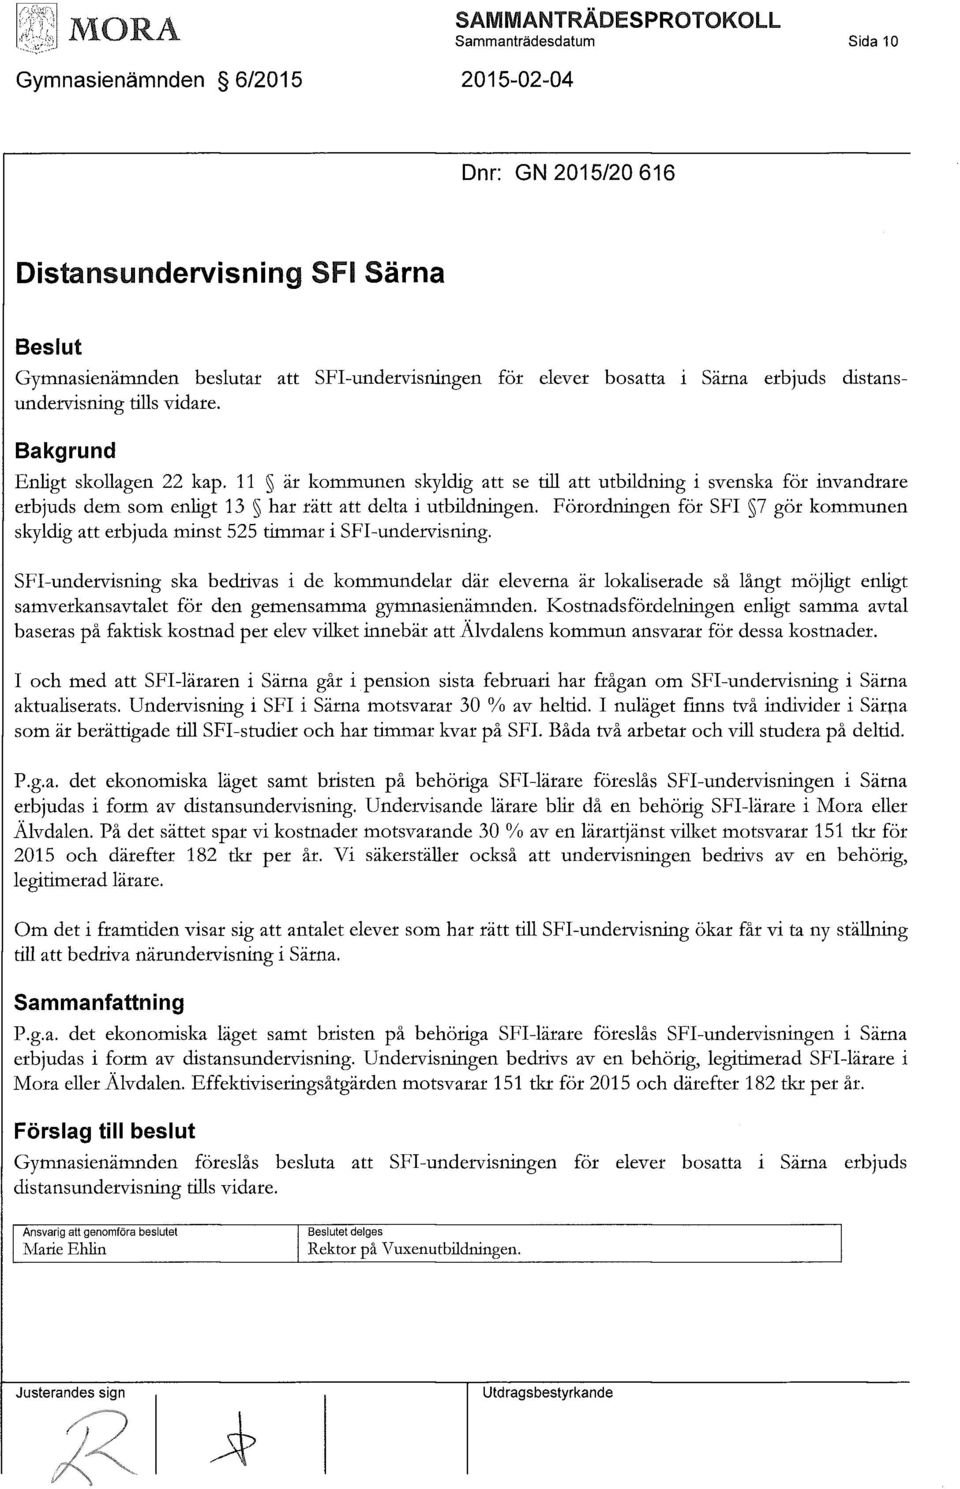 11 är kommunen skyldig att se till att utbildning i svenska för invandrare erbjuds dem som enligt 13 har rätt att delta i utb dningen.